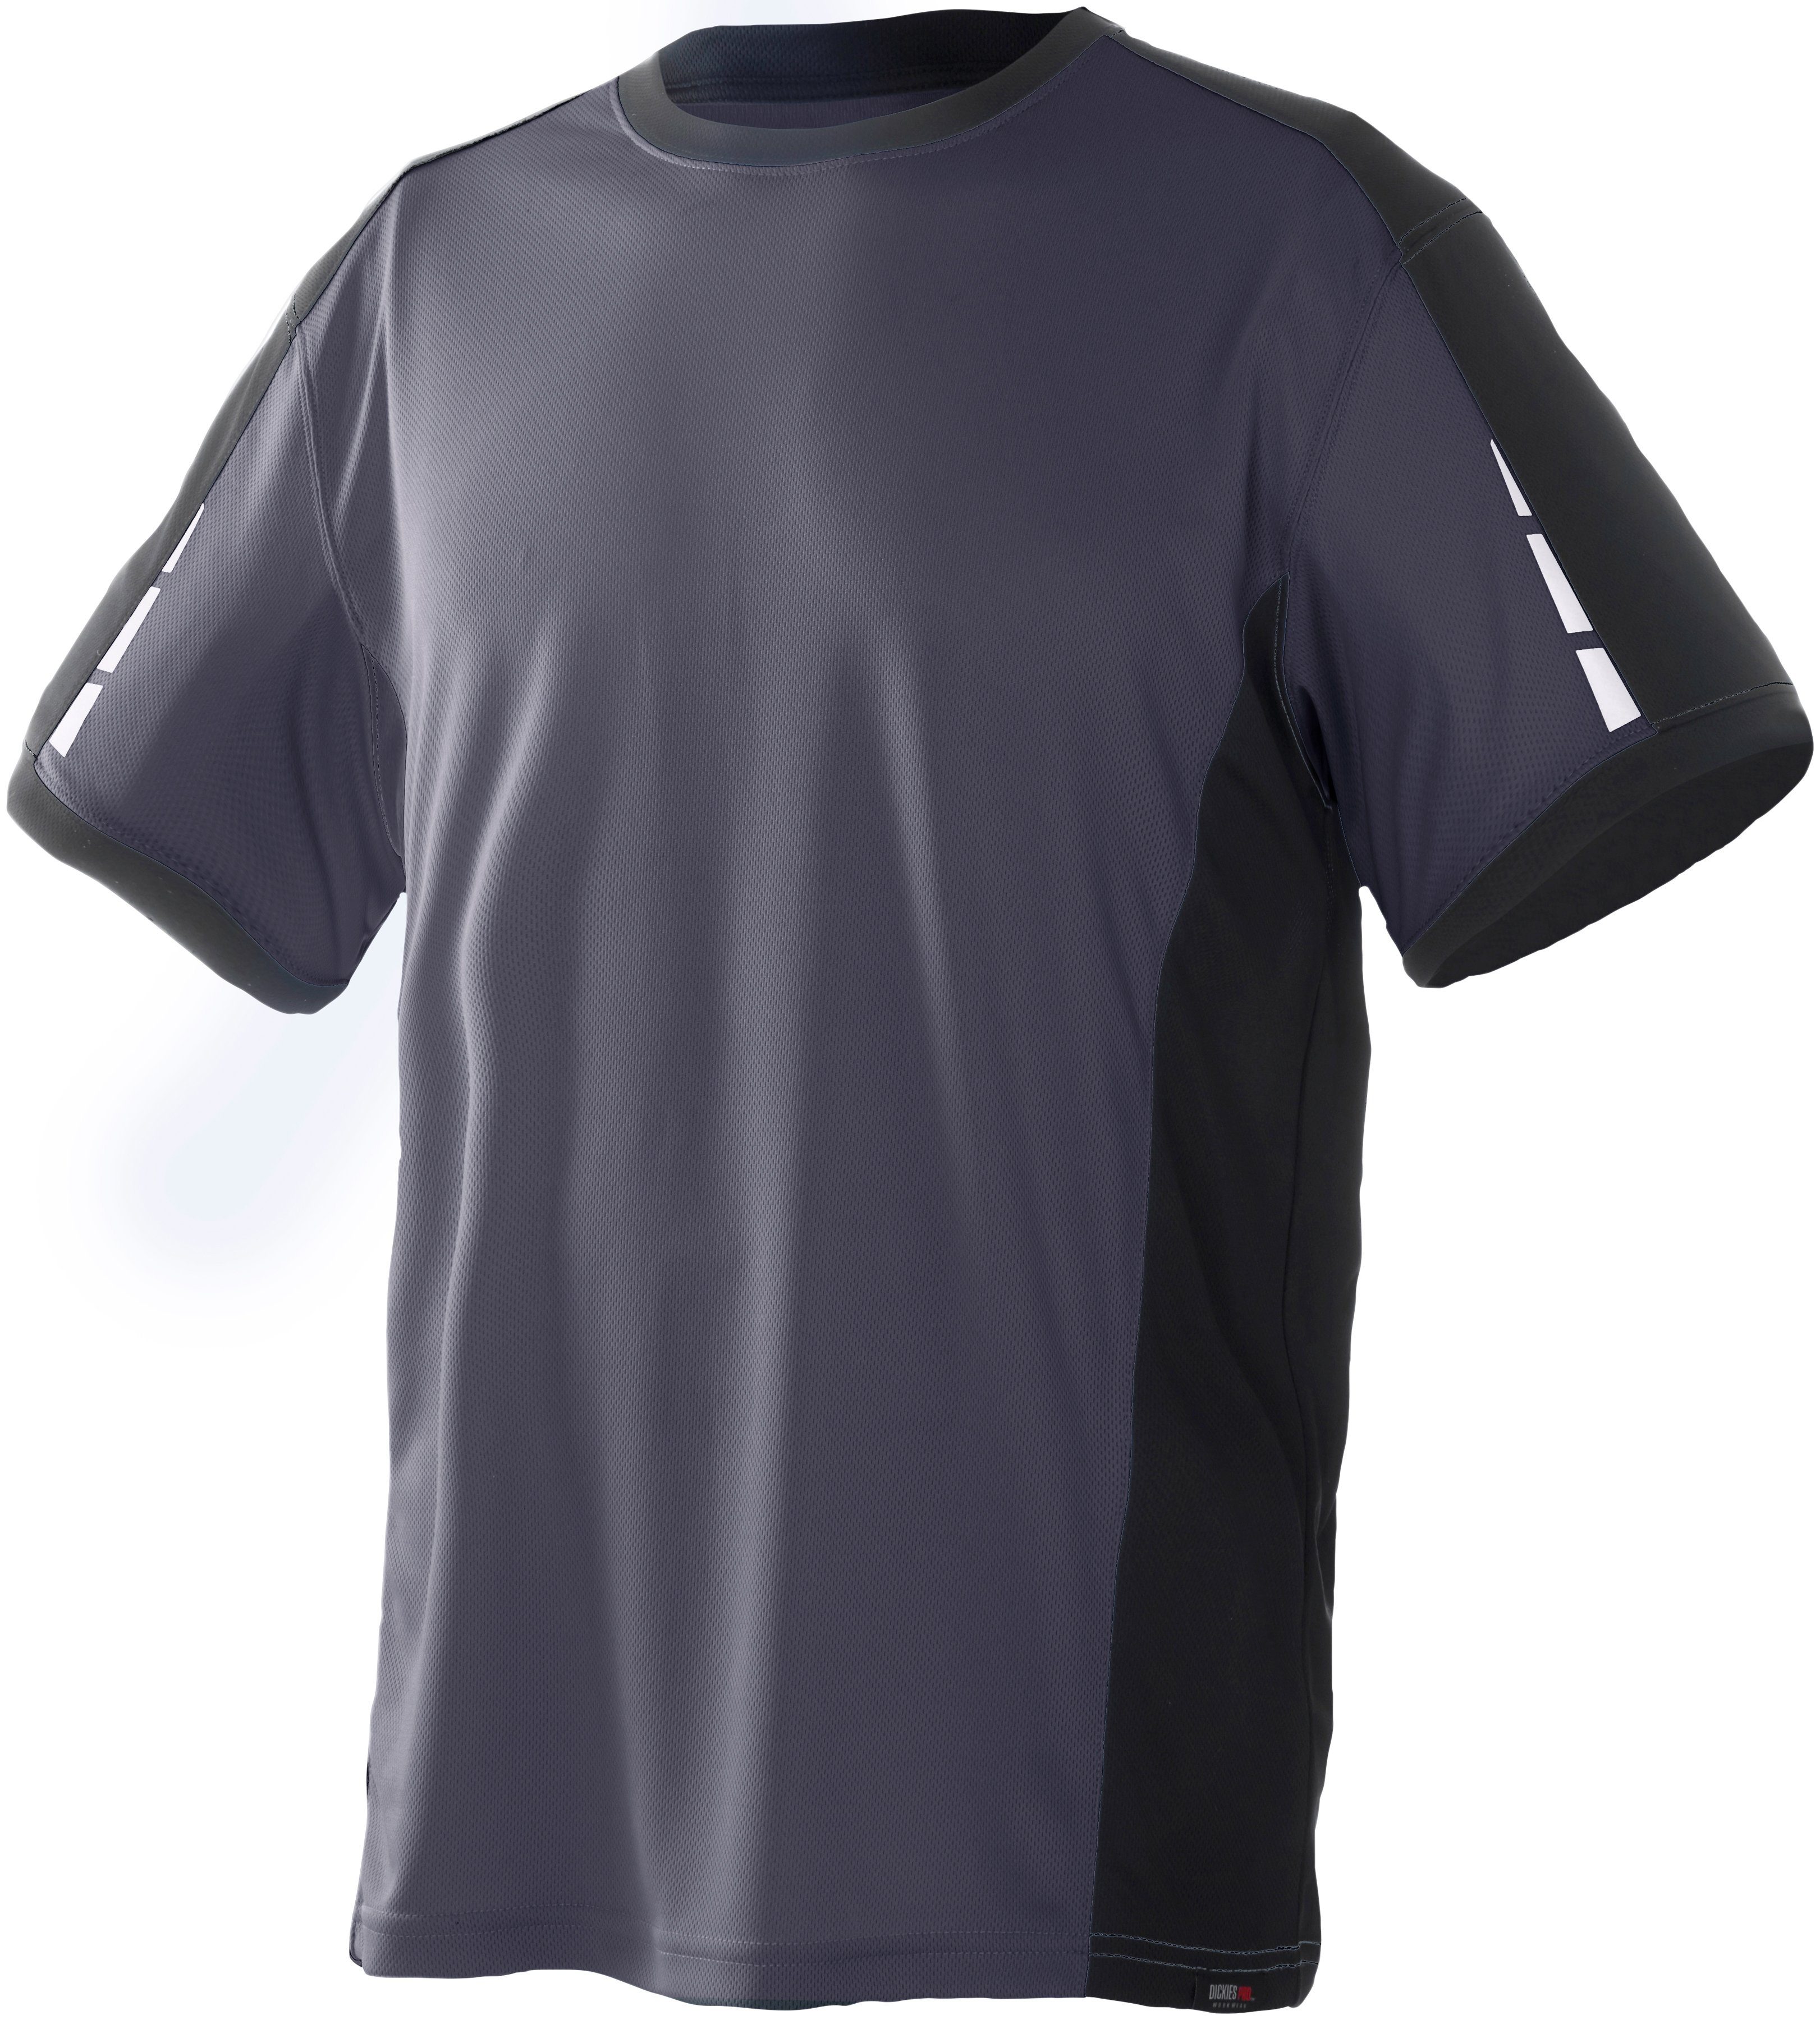 Dickies T-Shirt Pro mit reflektierenden Details an den Ärmeln grau-schwarz